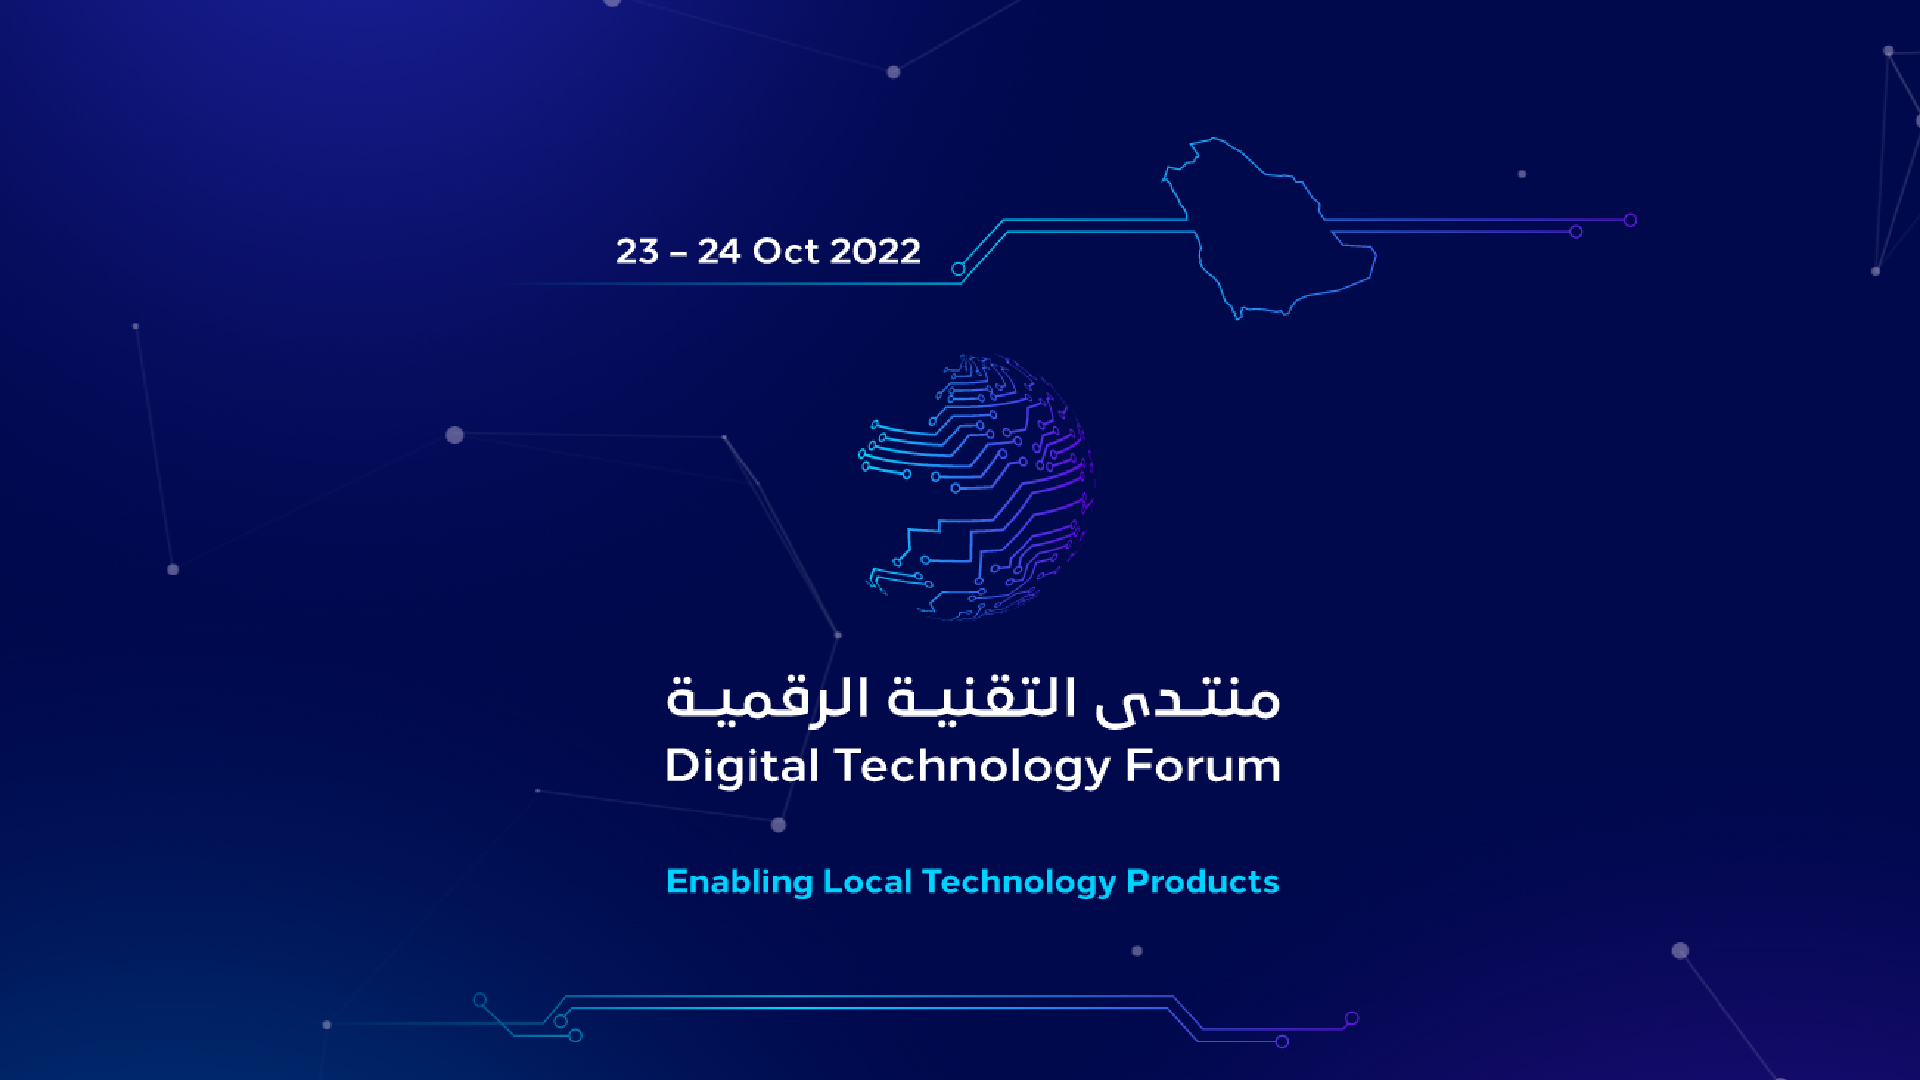 LinQ2’s Participation at CITC’s Digital Technology Forum 2022